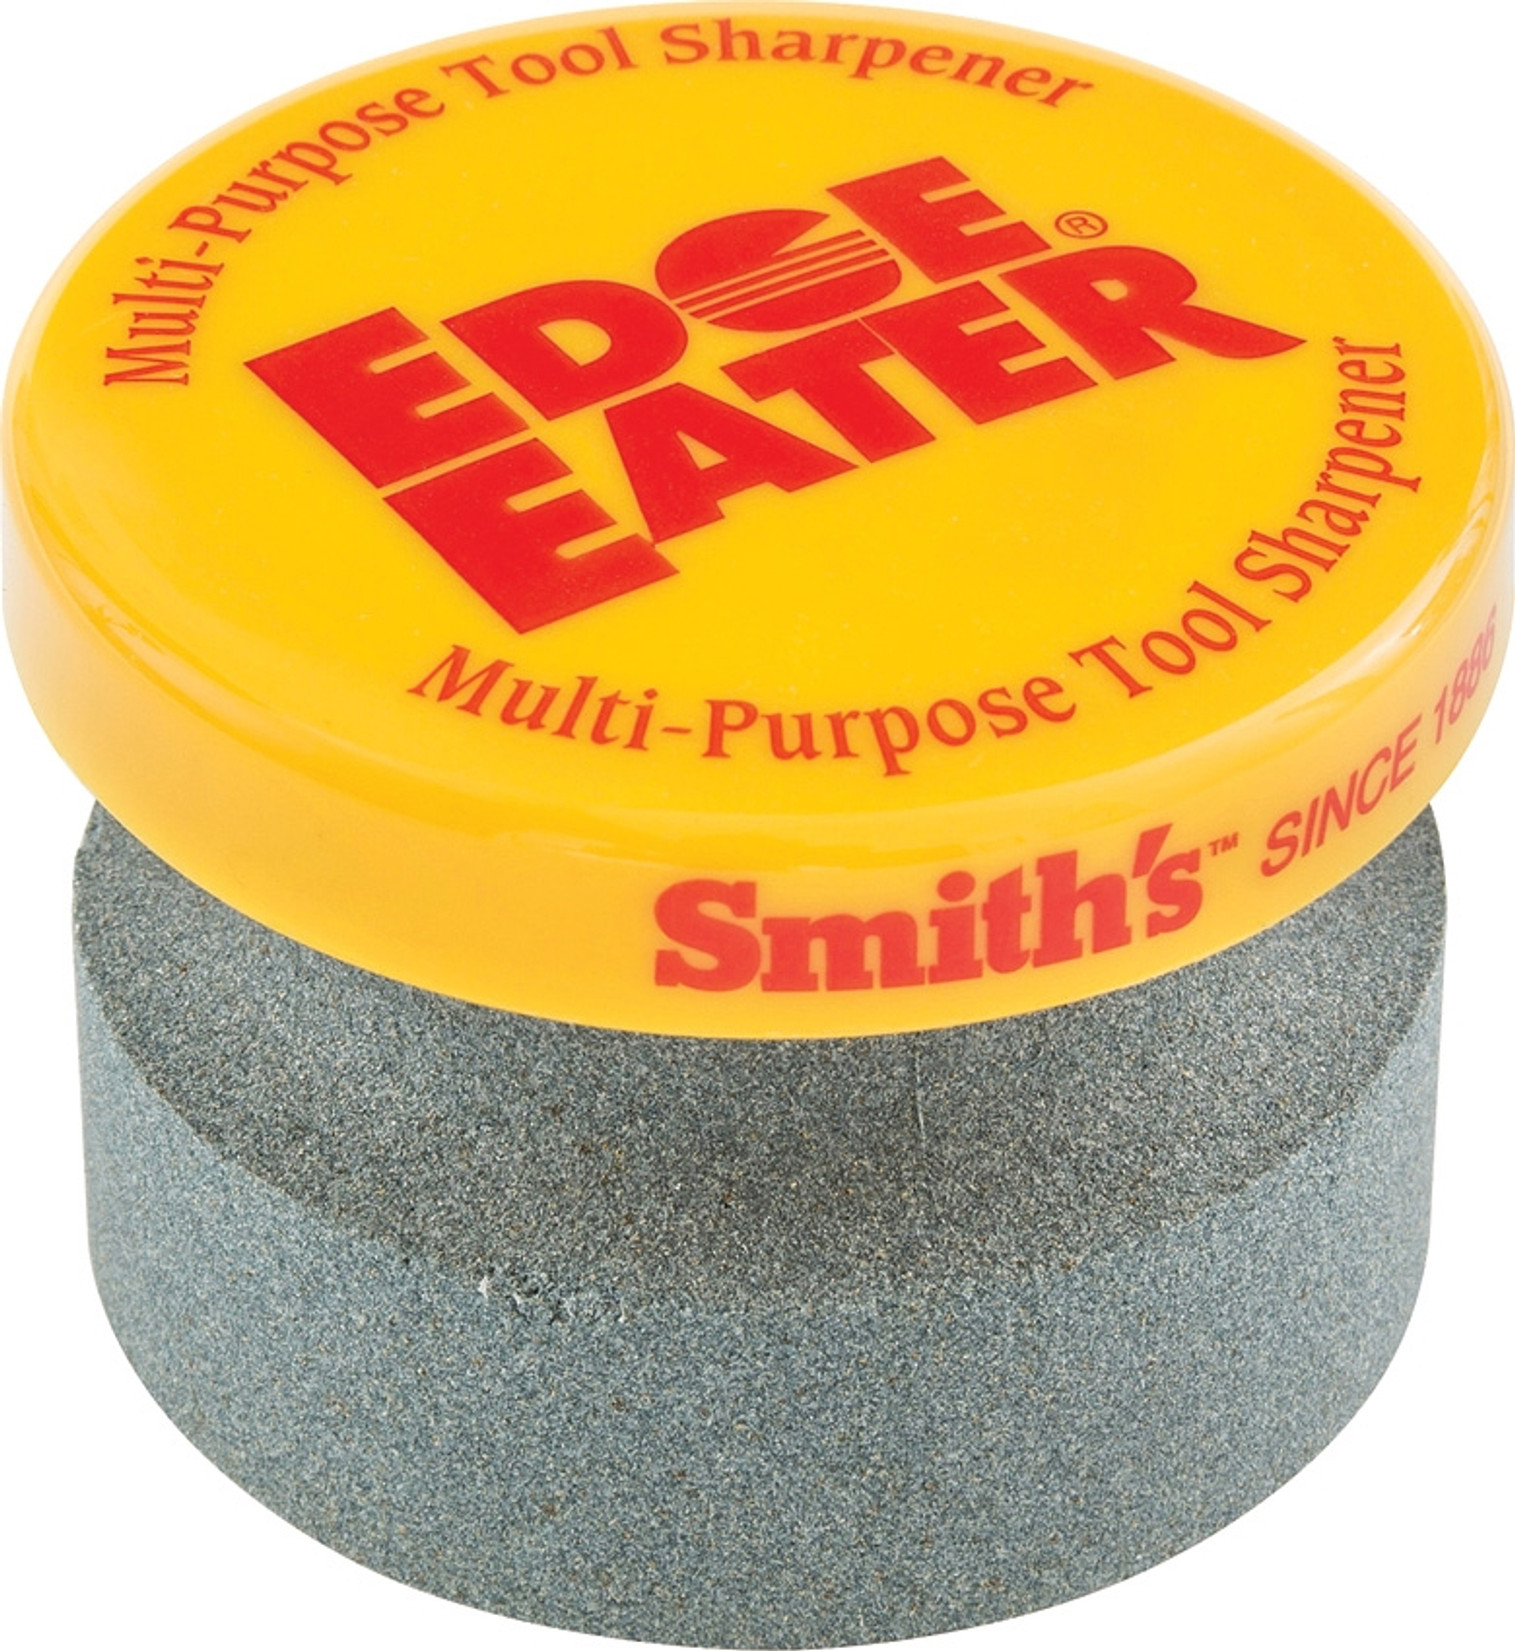 Edge Eater Tool Sharpener